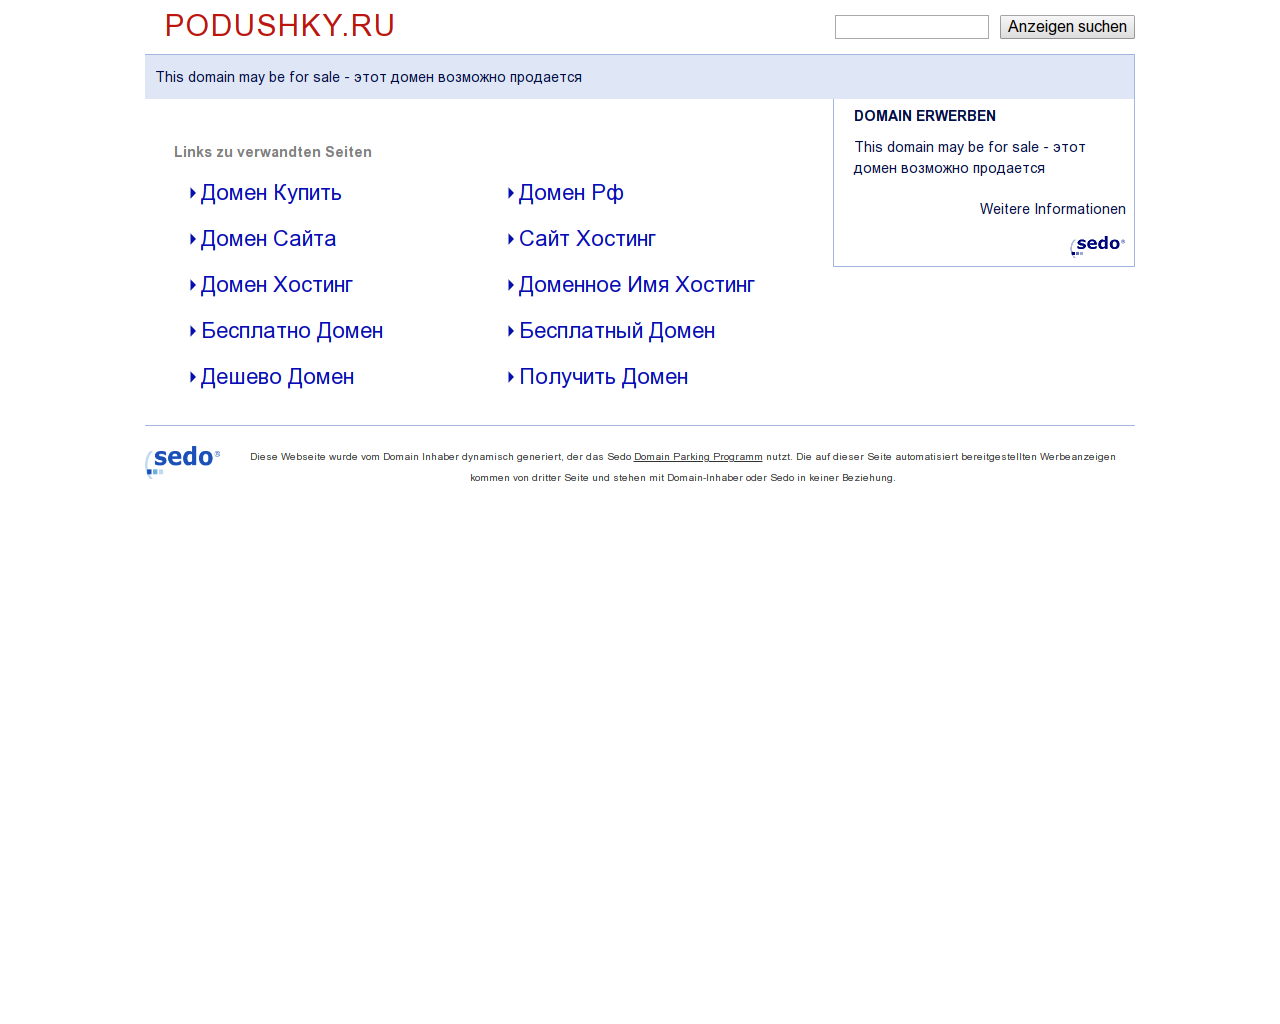 Изображение сайта podushky.ru в разрешении 1280x1024